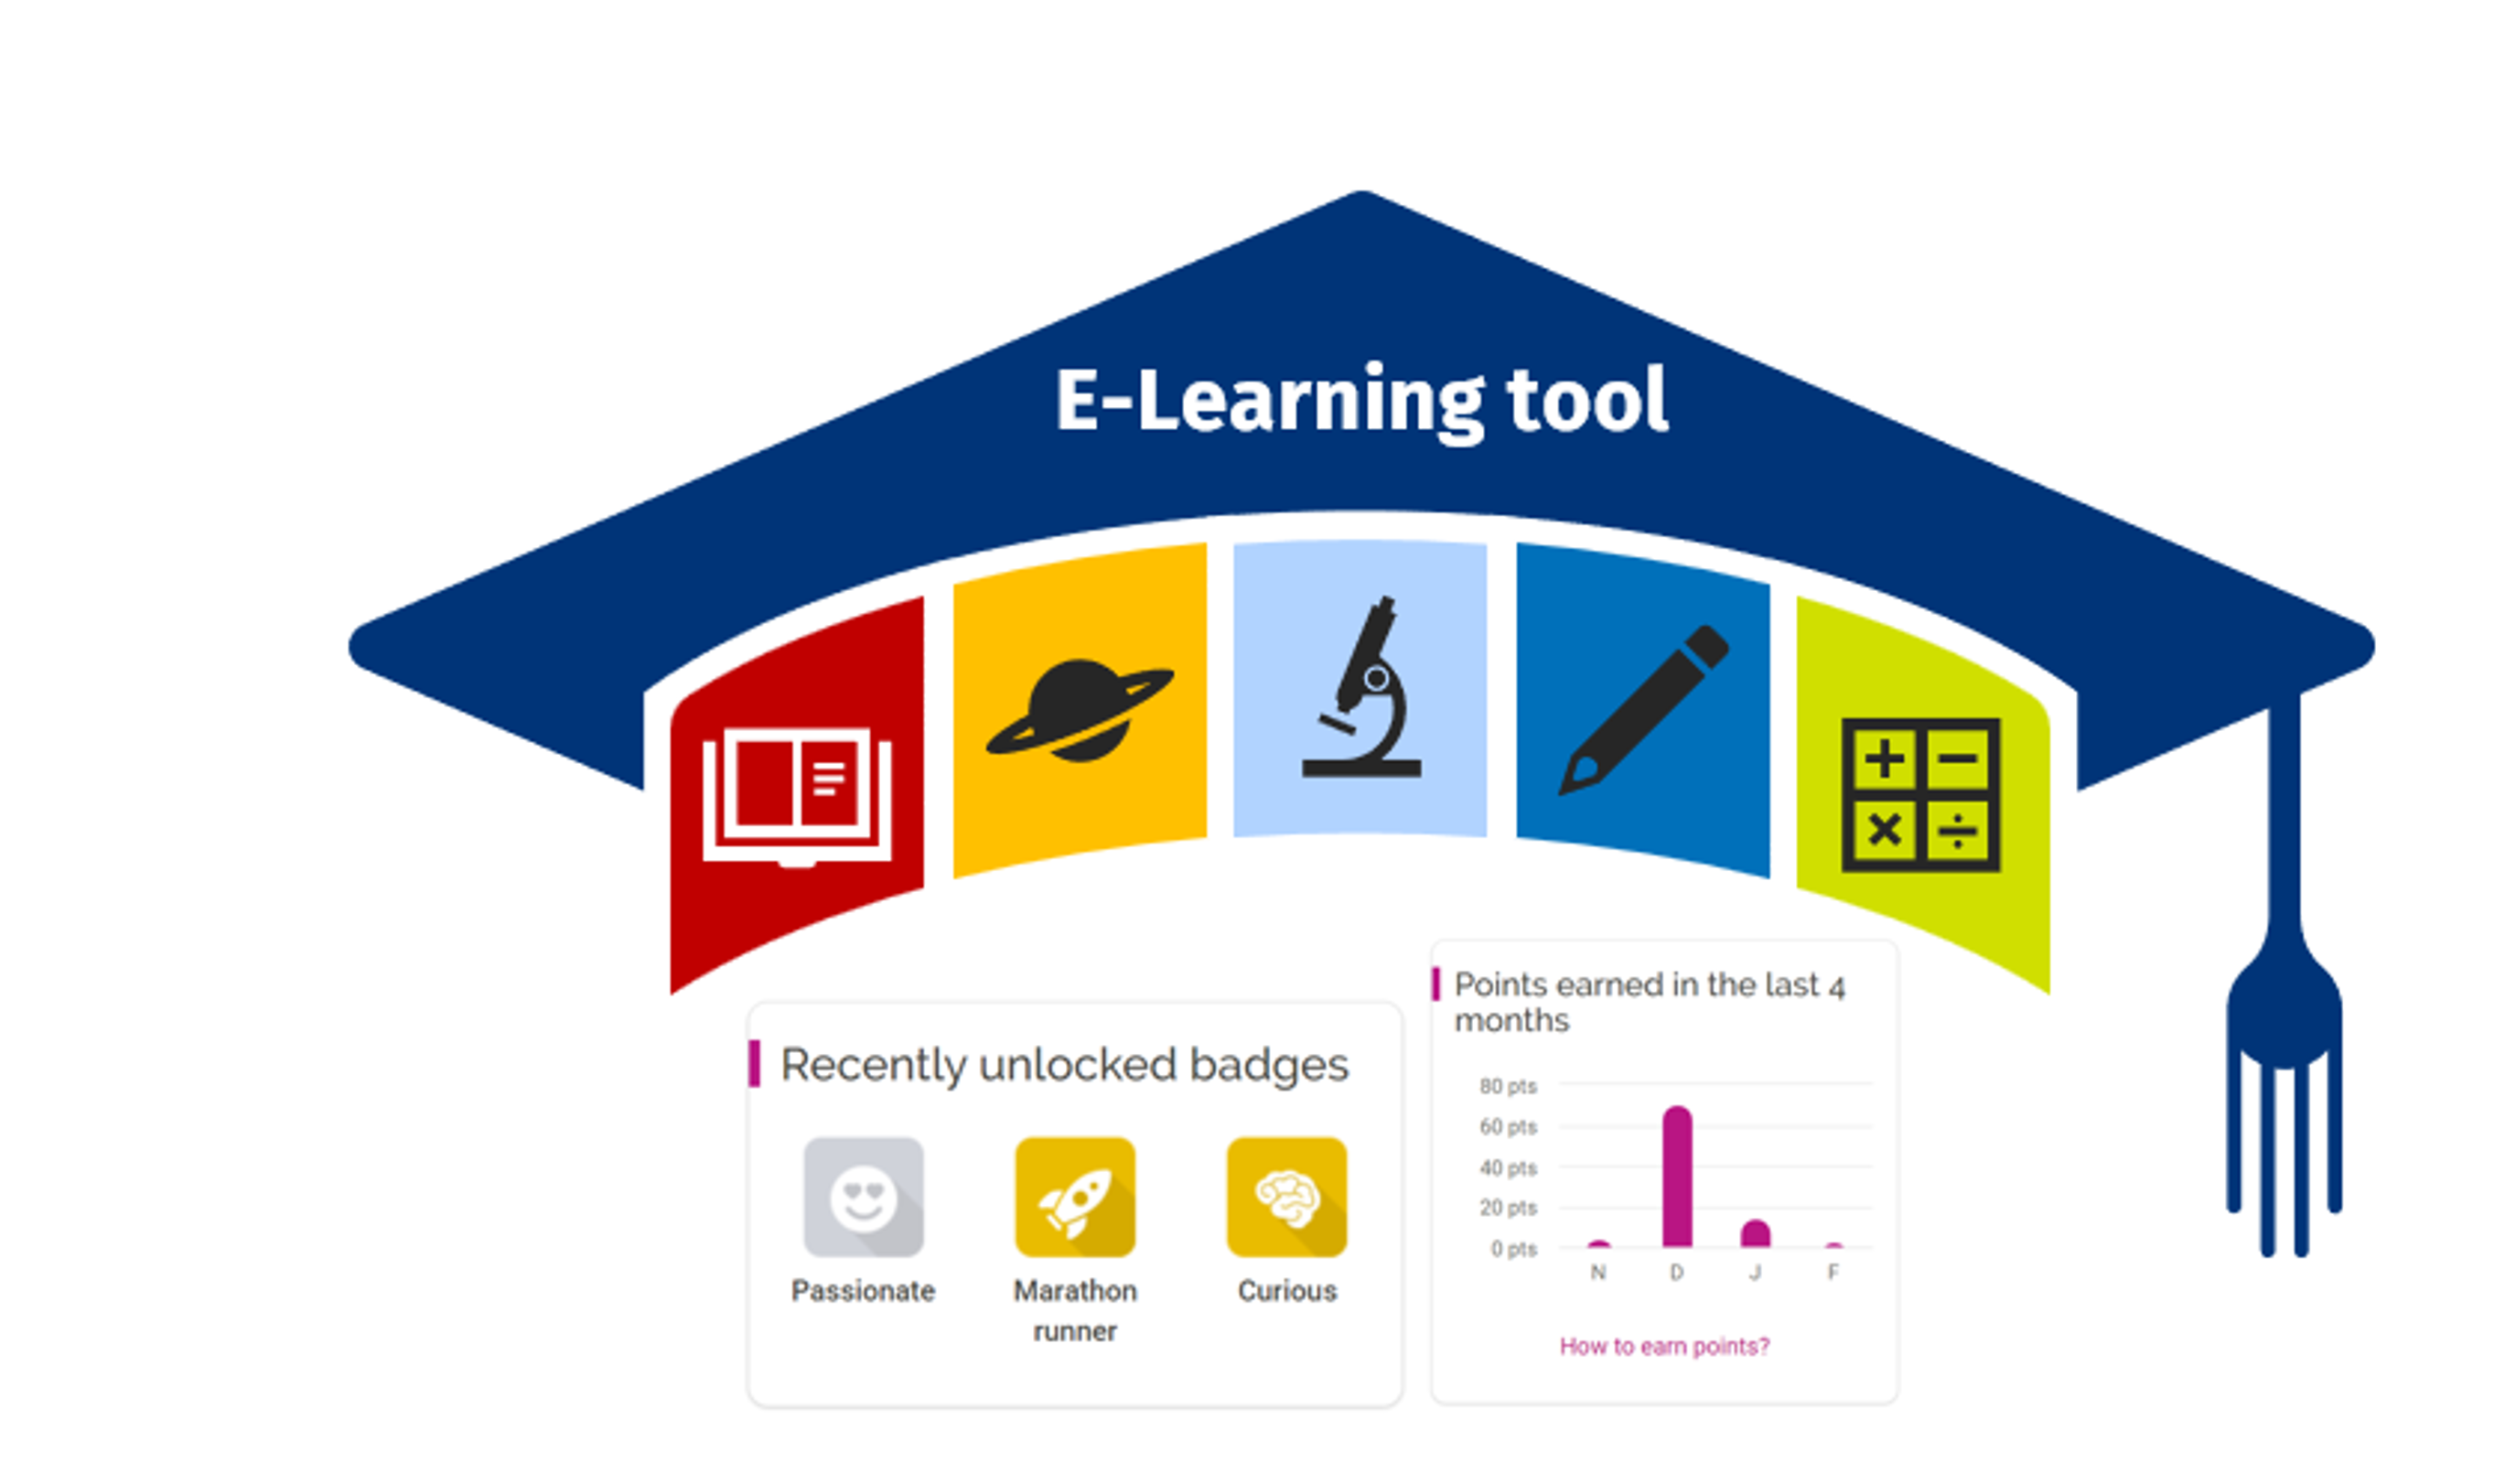 E-Learning tool